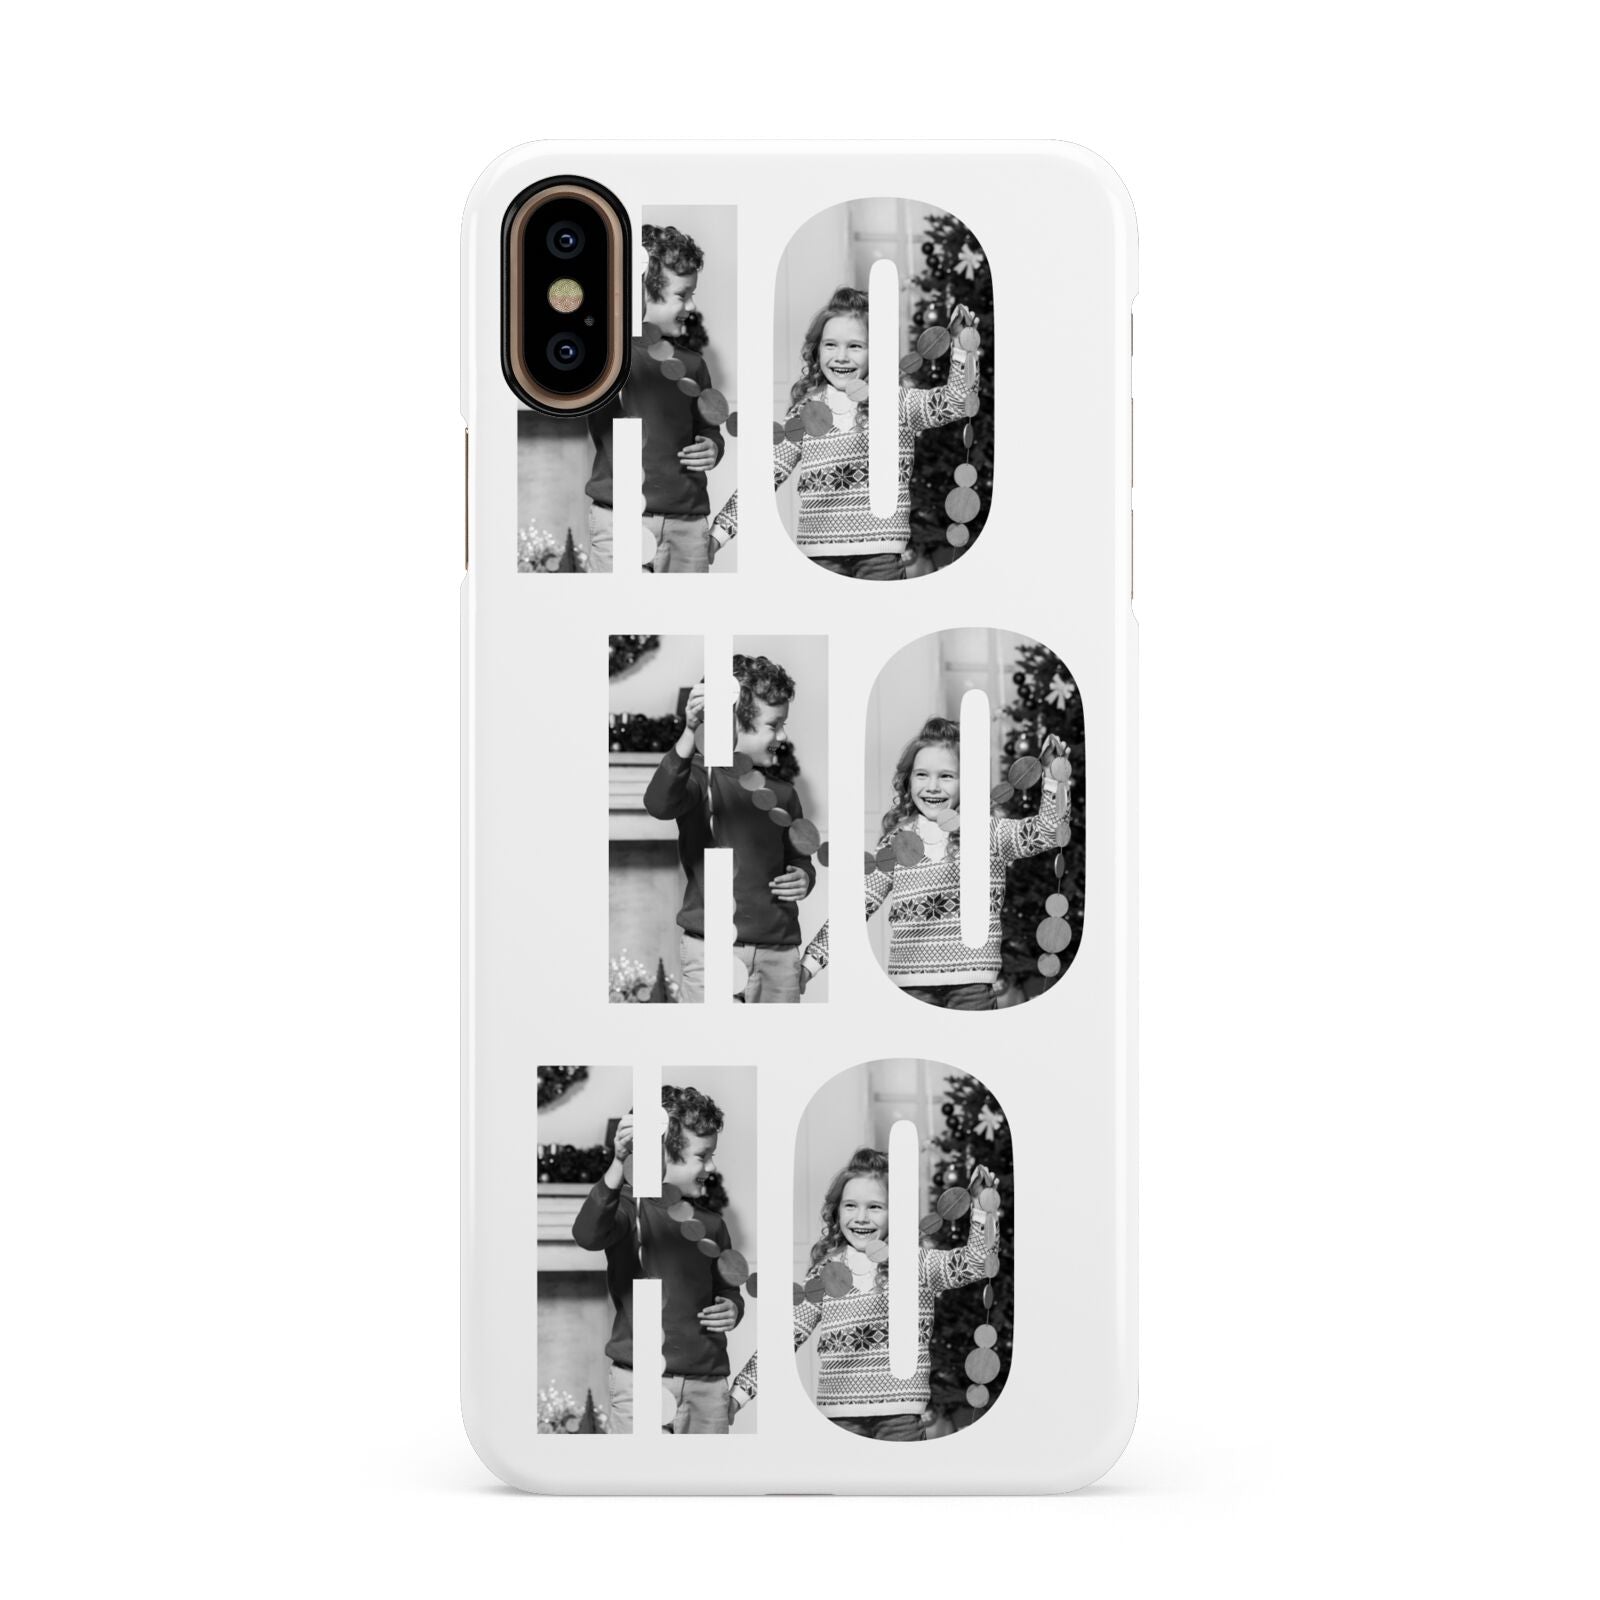 Ho Ho Ho Photo Upload Christmas Apple iPhone Xs Max 3D Snap Case